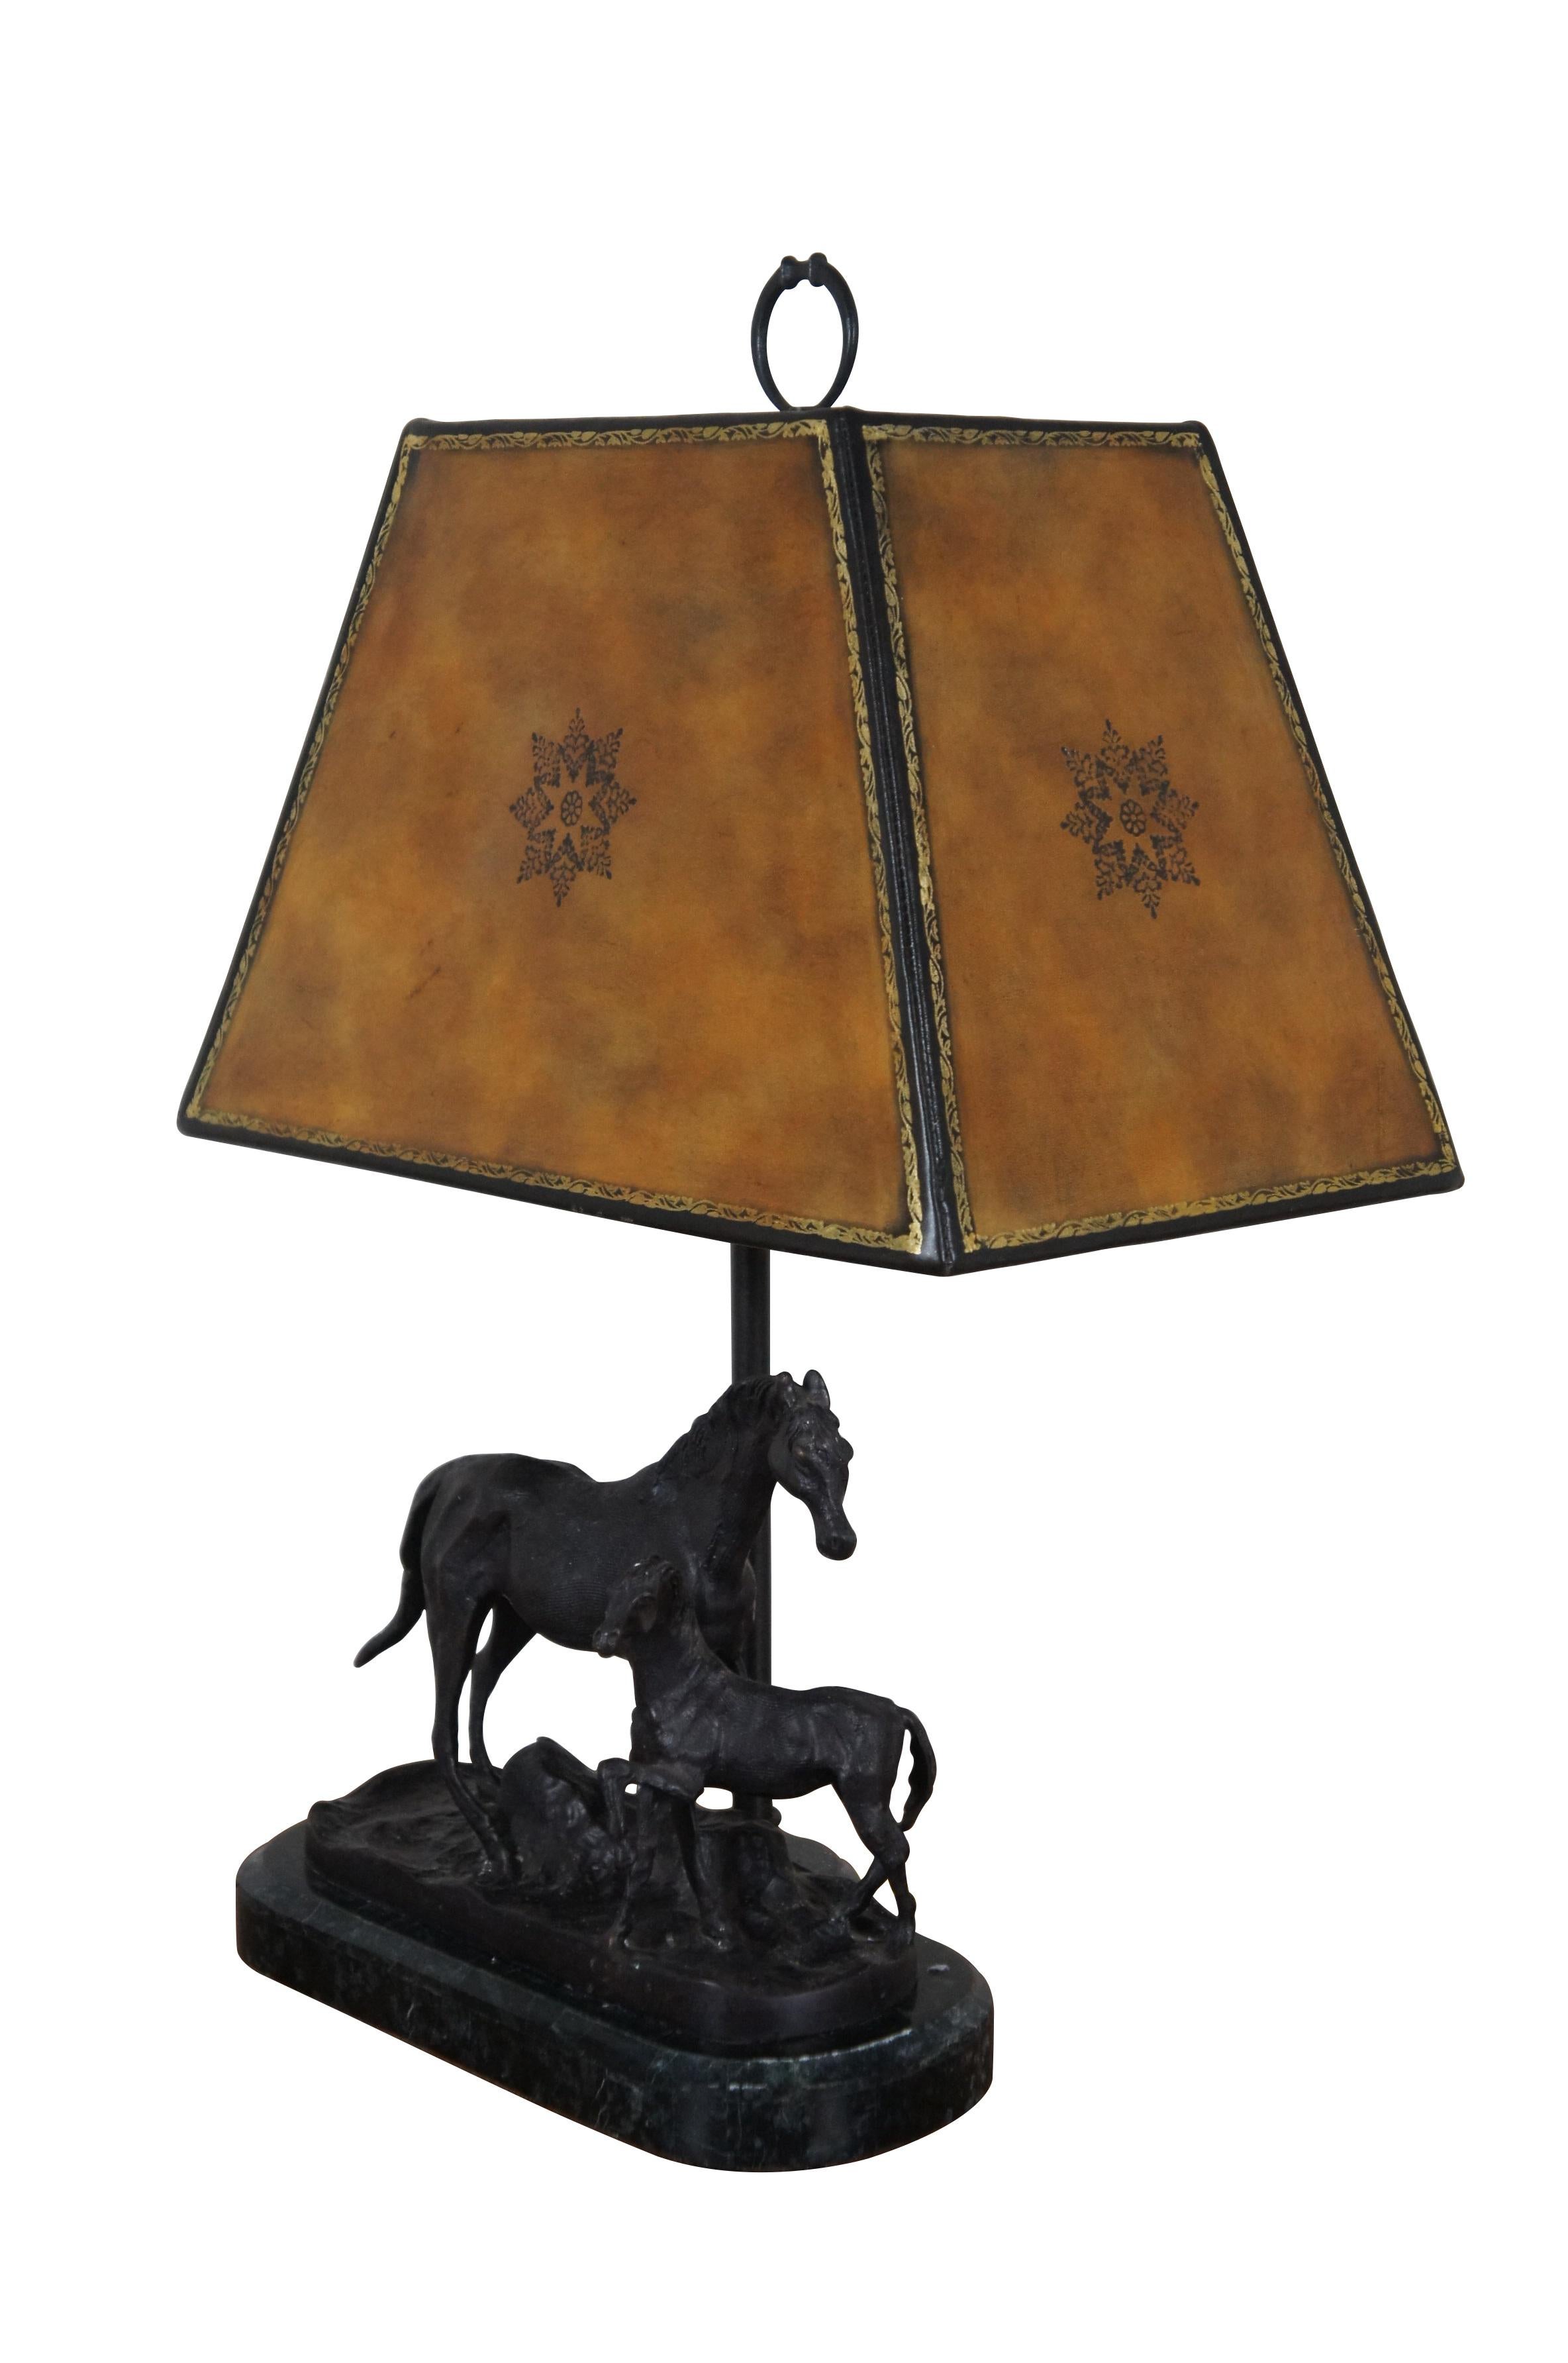 Lampe de table en bronze de Maitland Smith, datant de la fin du 20e siècle, représentant une jument et son poulain dans un tableau, sur une base recouverte de marbre noir. Comprend un abat-jour rigide et rectangulaire en cuir doré / toilé avec